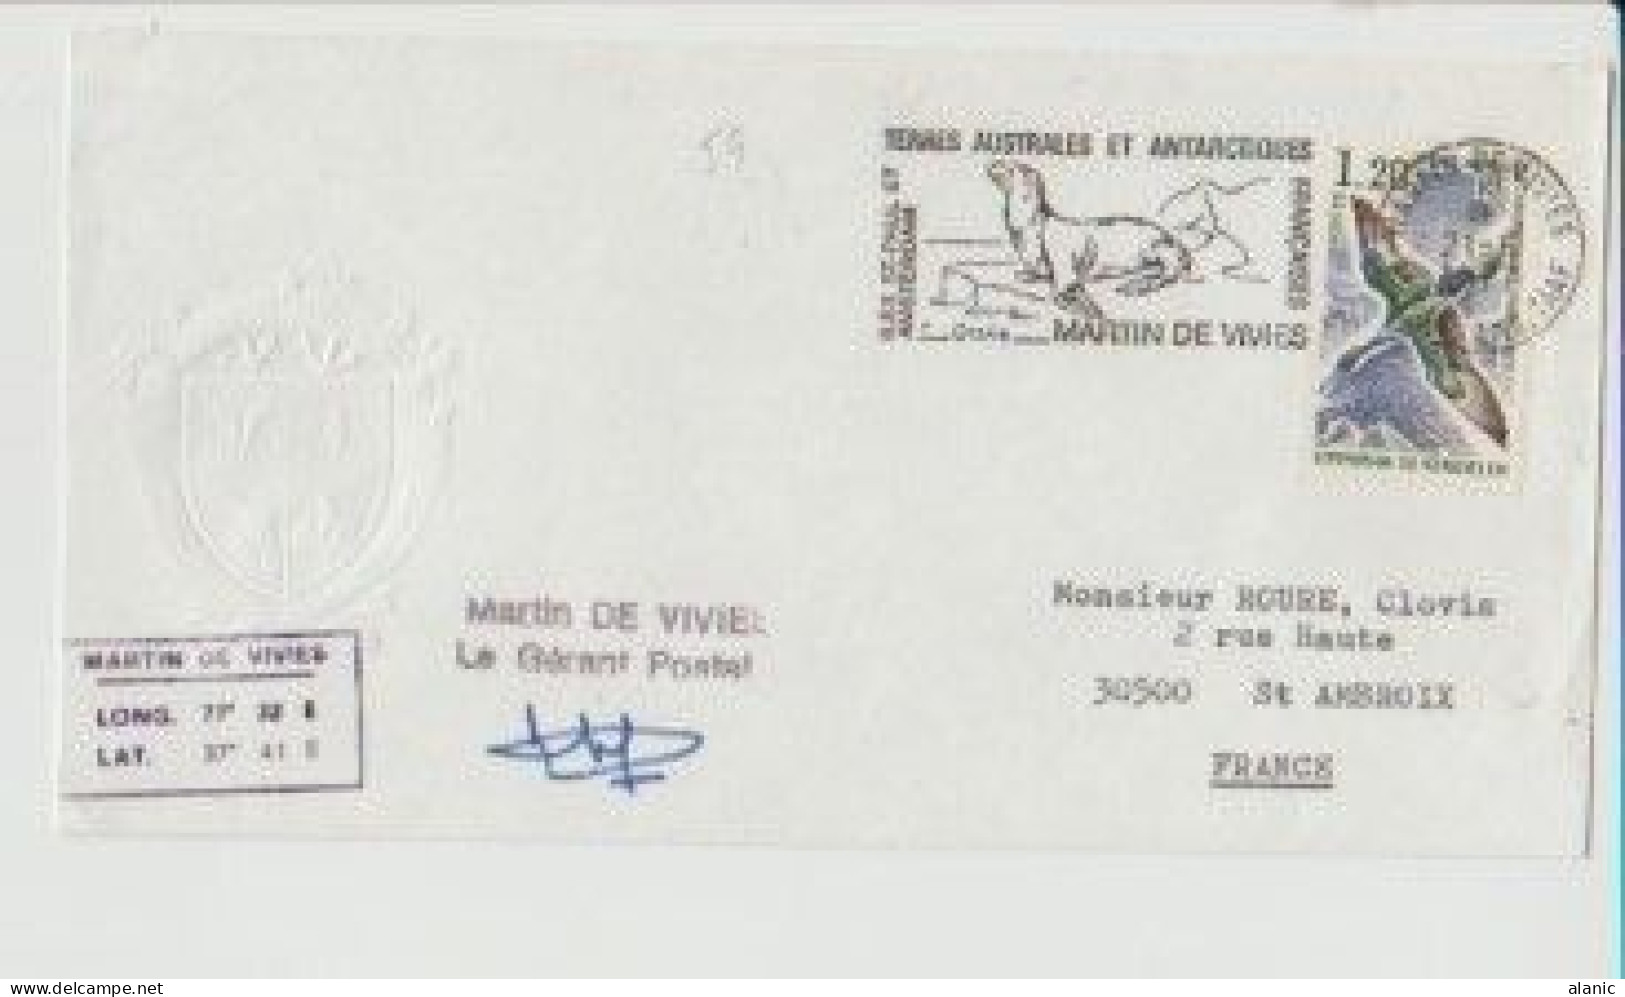 TAAF SUR LETTRE N°59 -ILES ST PAUL ET AMSTERDAM /MARTIN DE VIVIES Pour St AMBROIS 21-6-1977 Avec Signature - Covers & Documents